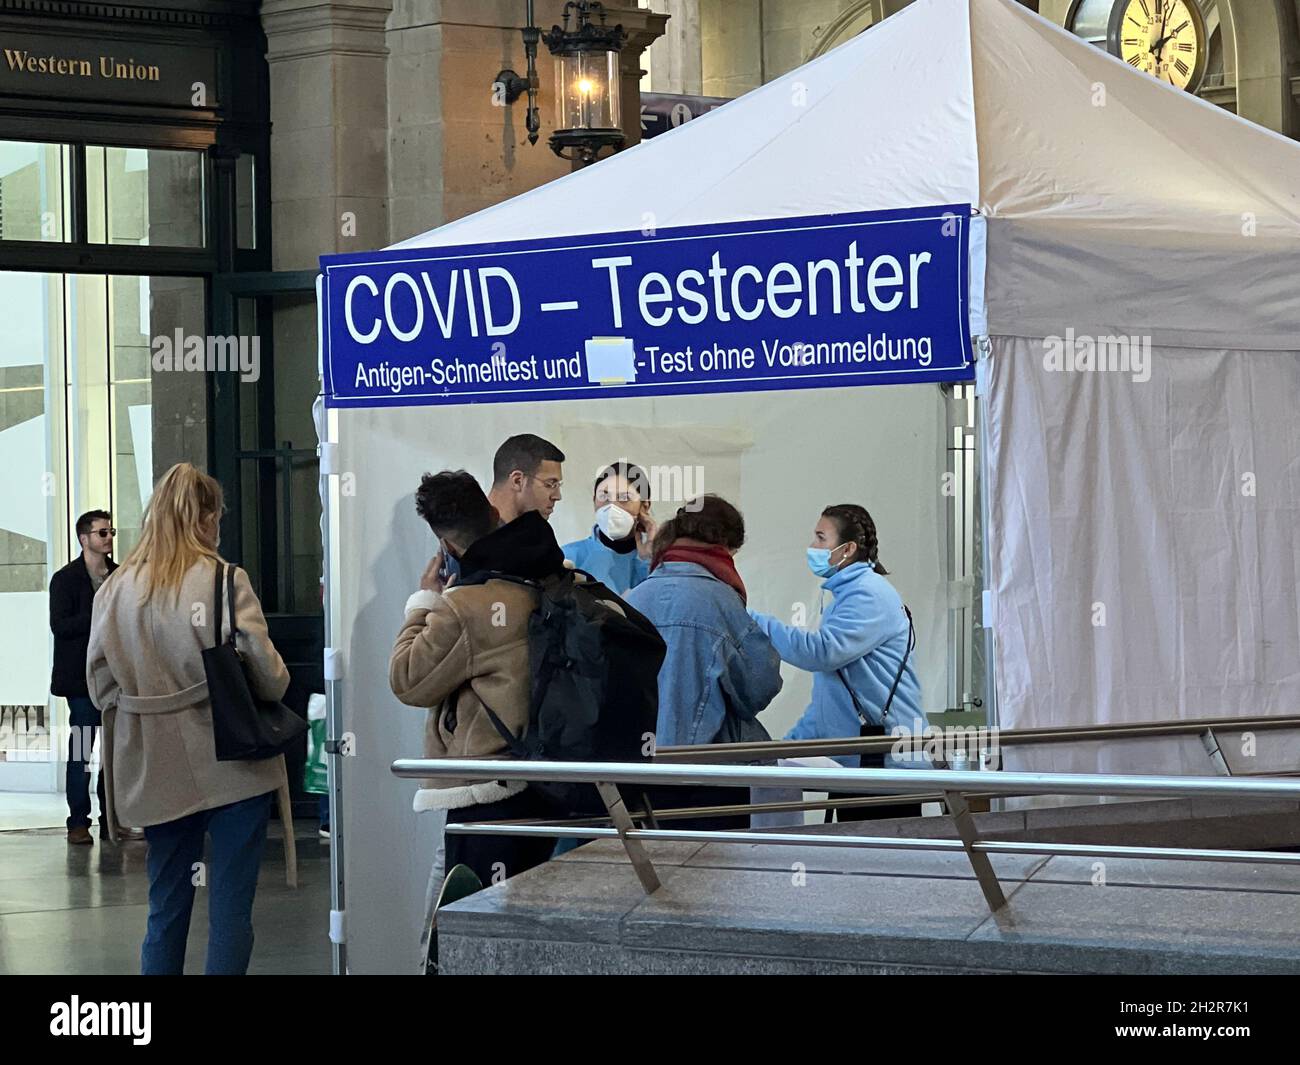 Covid-Testzentrum am Hauptbahnhof in Zürich. Eine deutsche Aufschrift besagt, dass für den Speed-Antigen-Test kein Termin erforderlich ist. Personen in der Warteschlange. Stockfoto